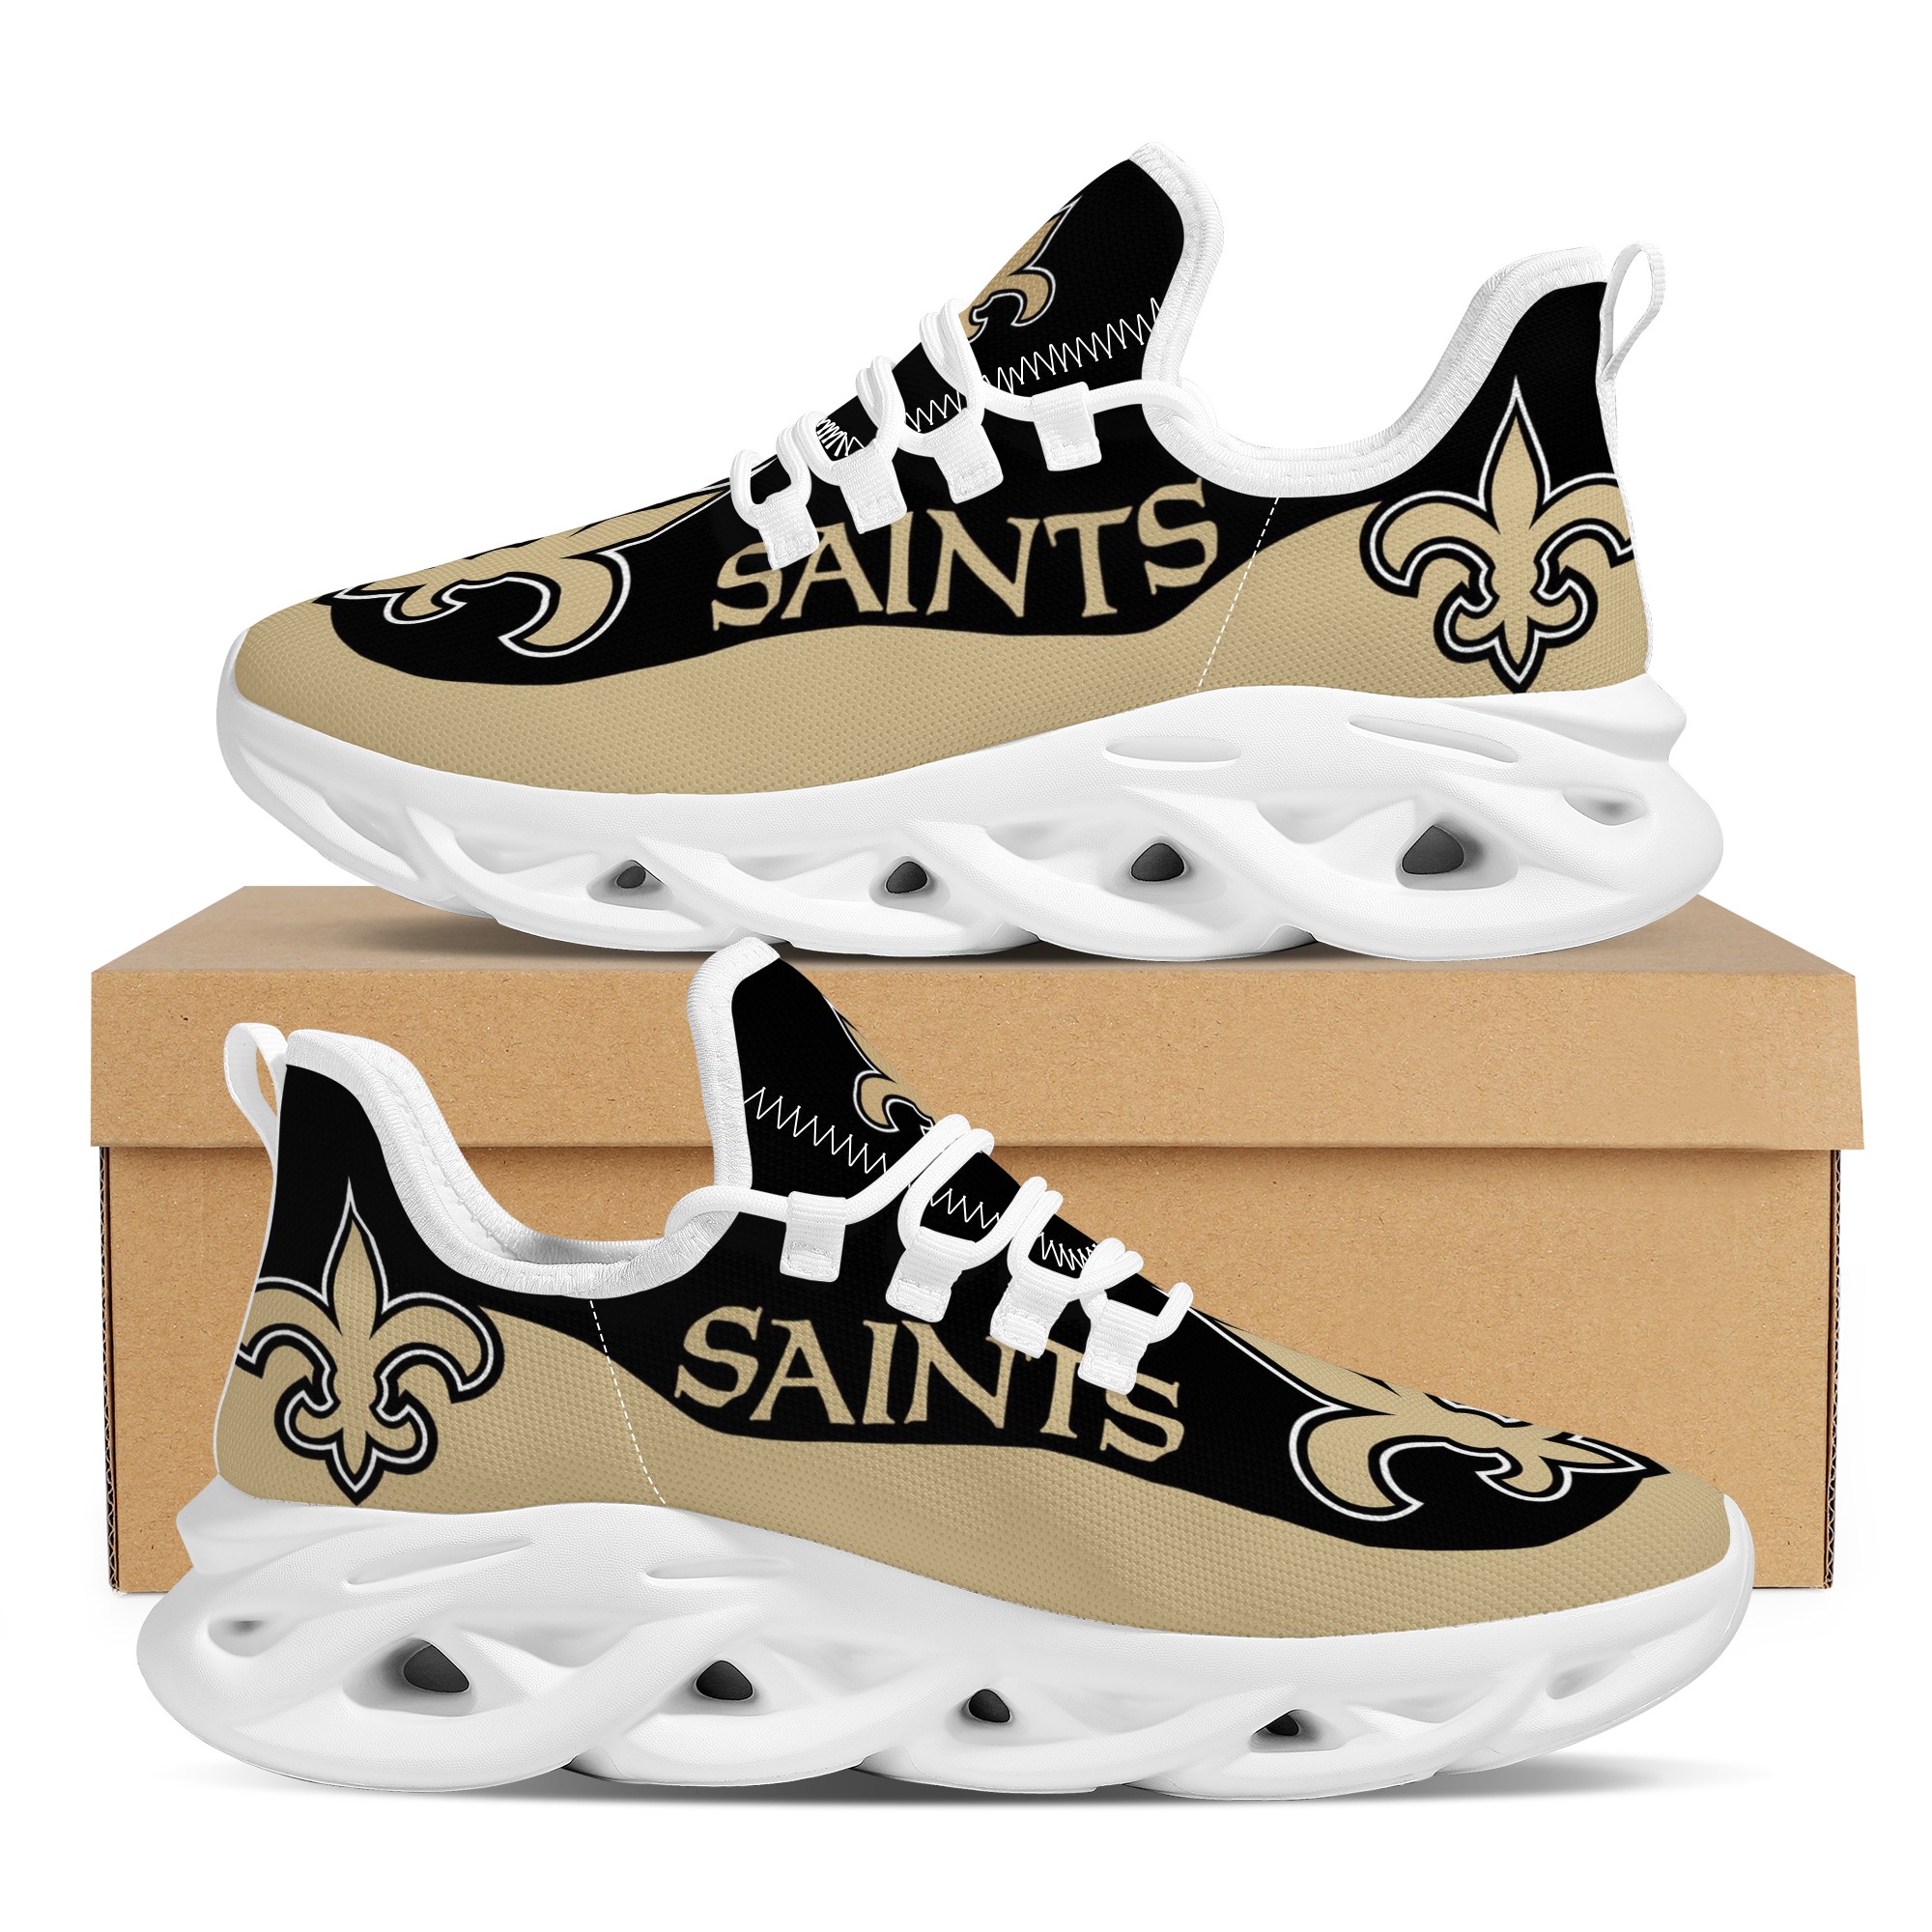 Men's New Orleans Saints Flex Control Sneakers 002